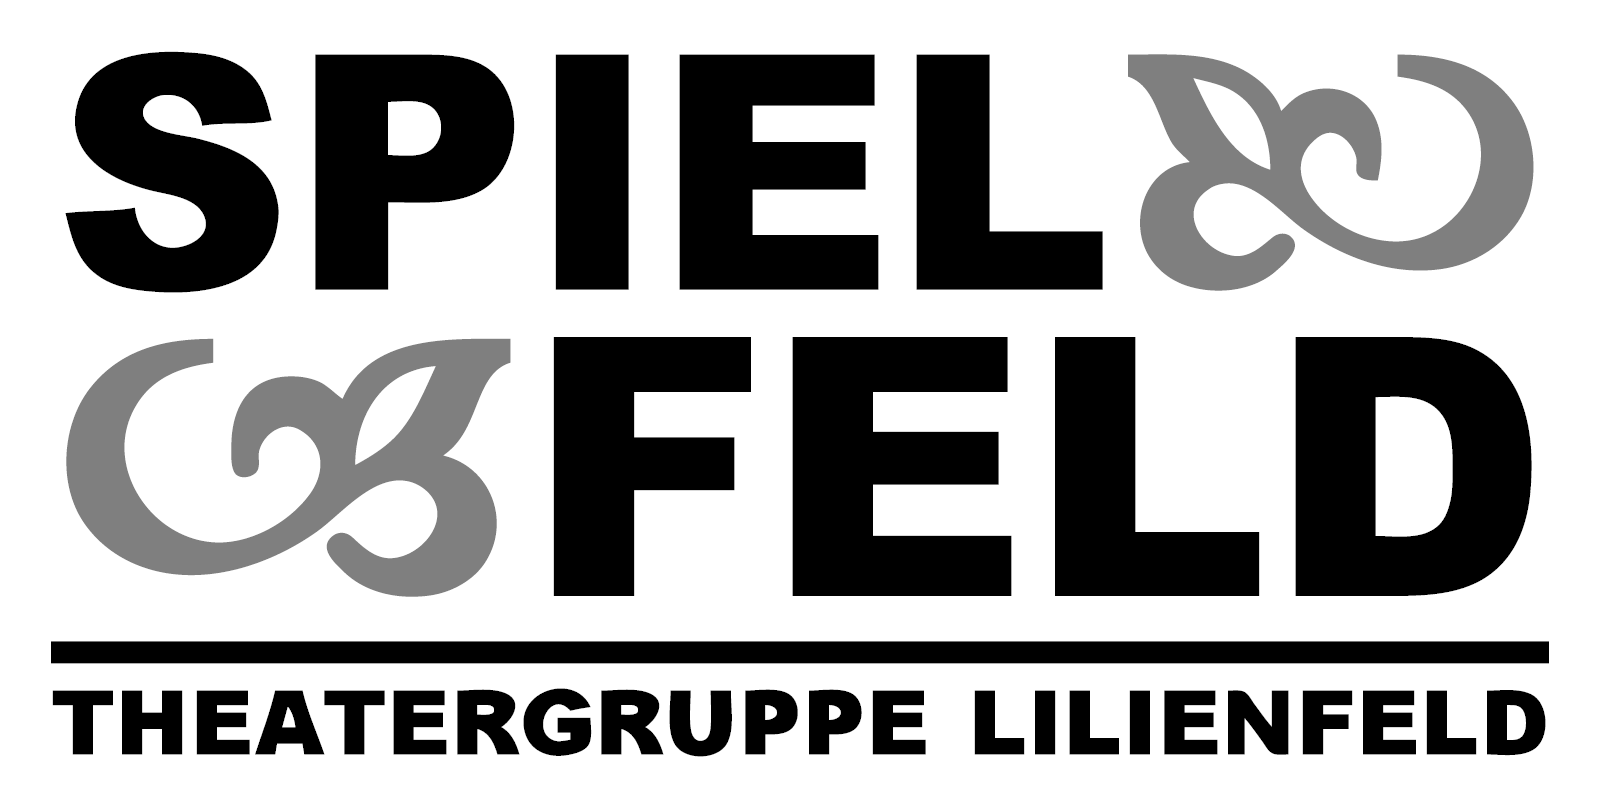 (c) Spielfeld.org